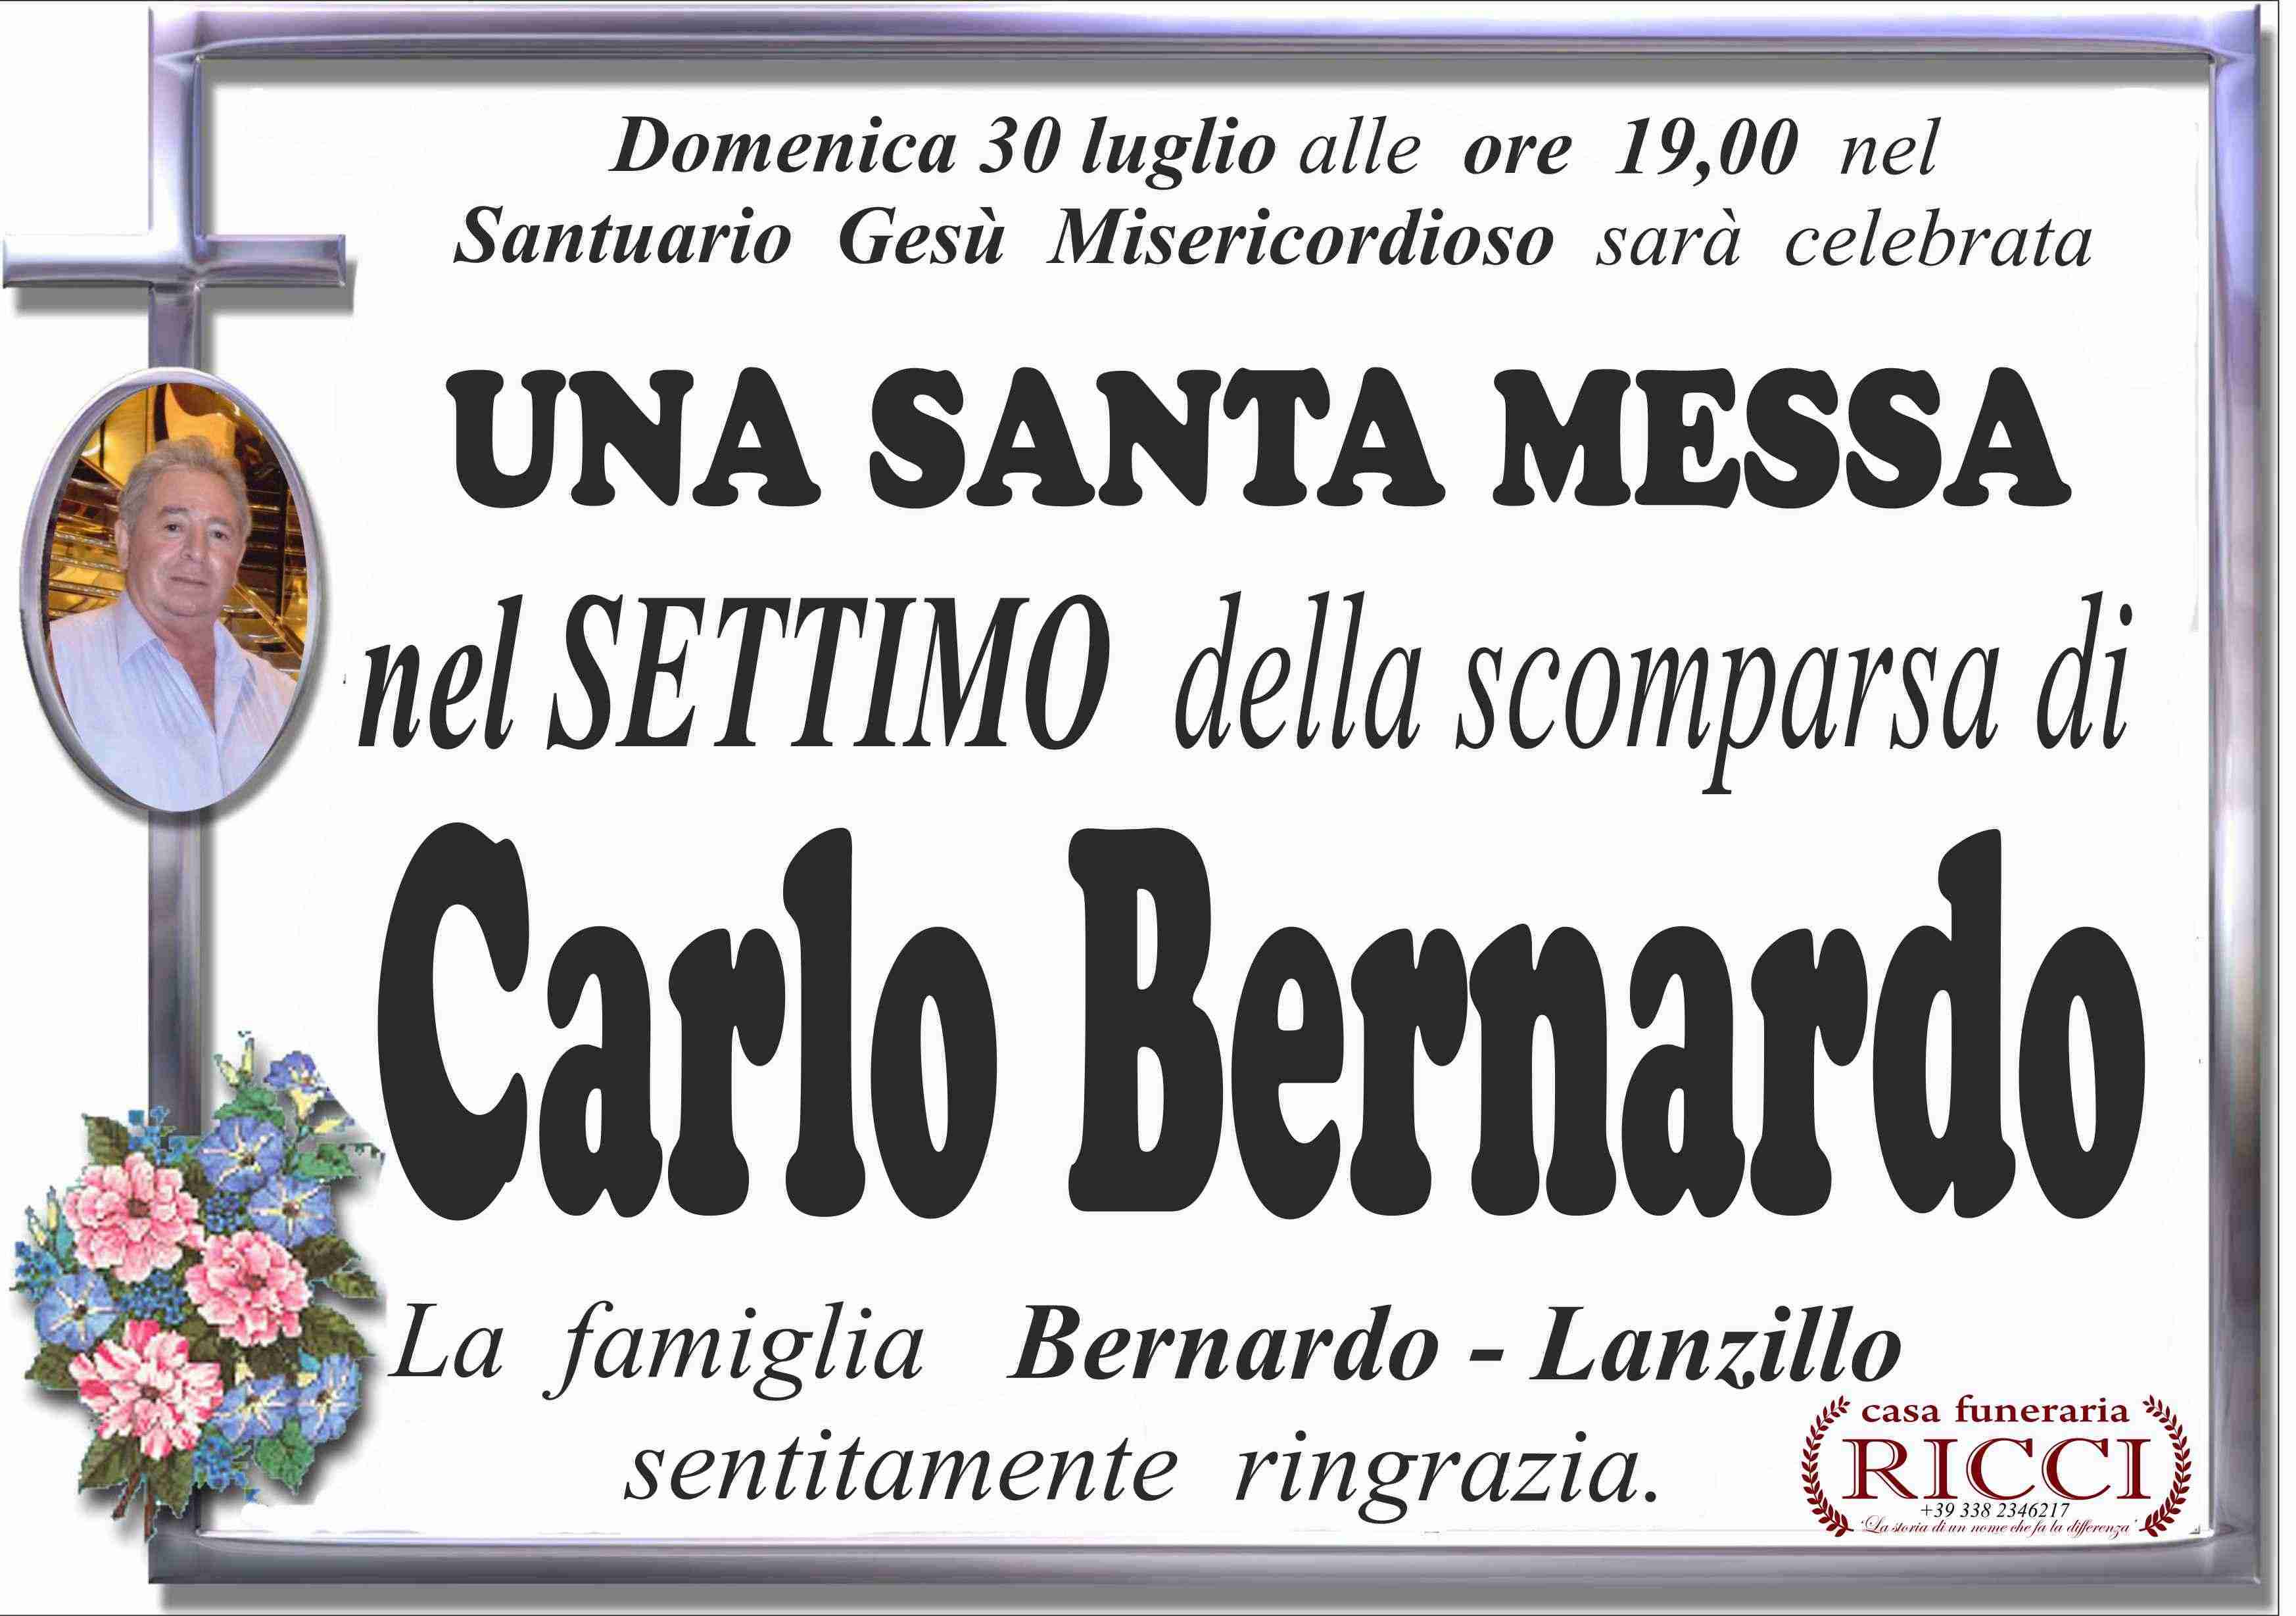 Carlo Bernardo